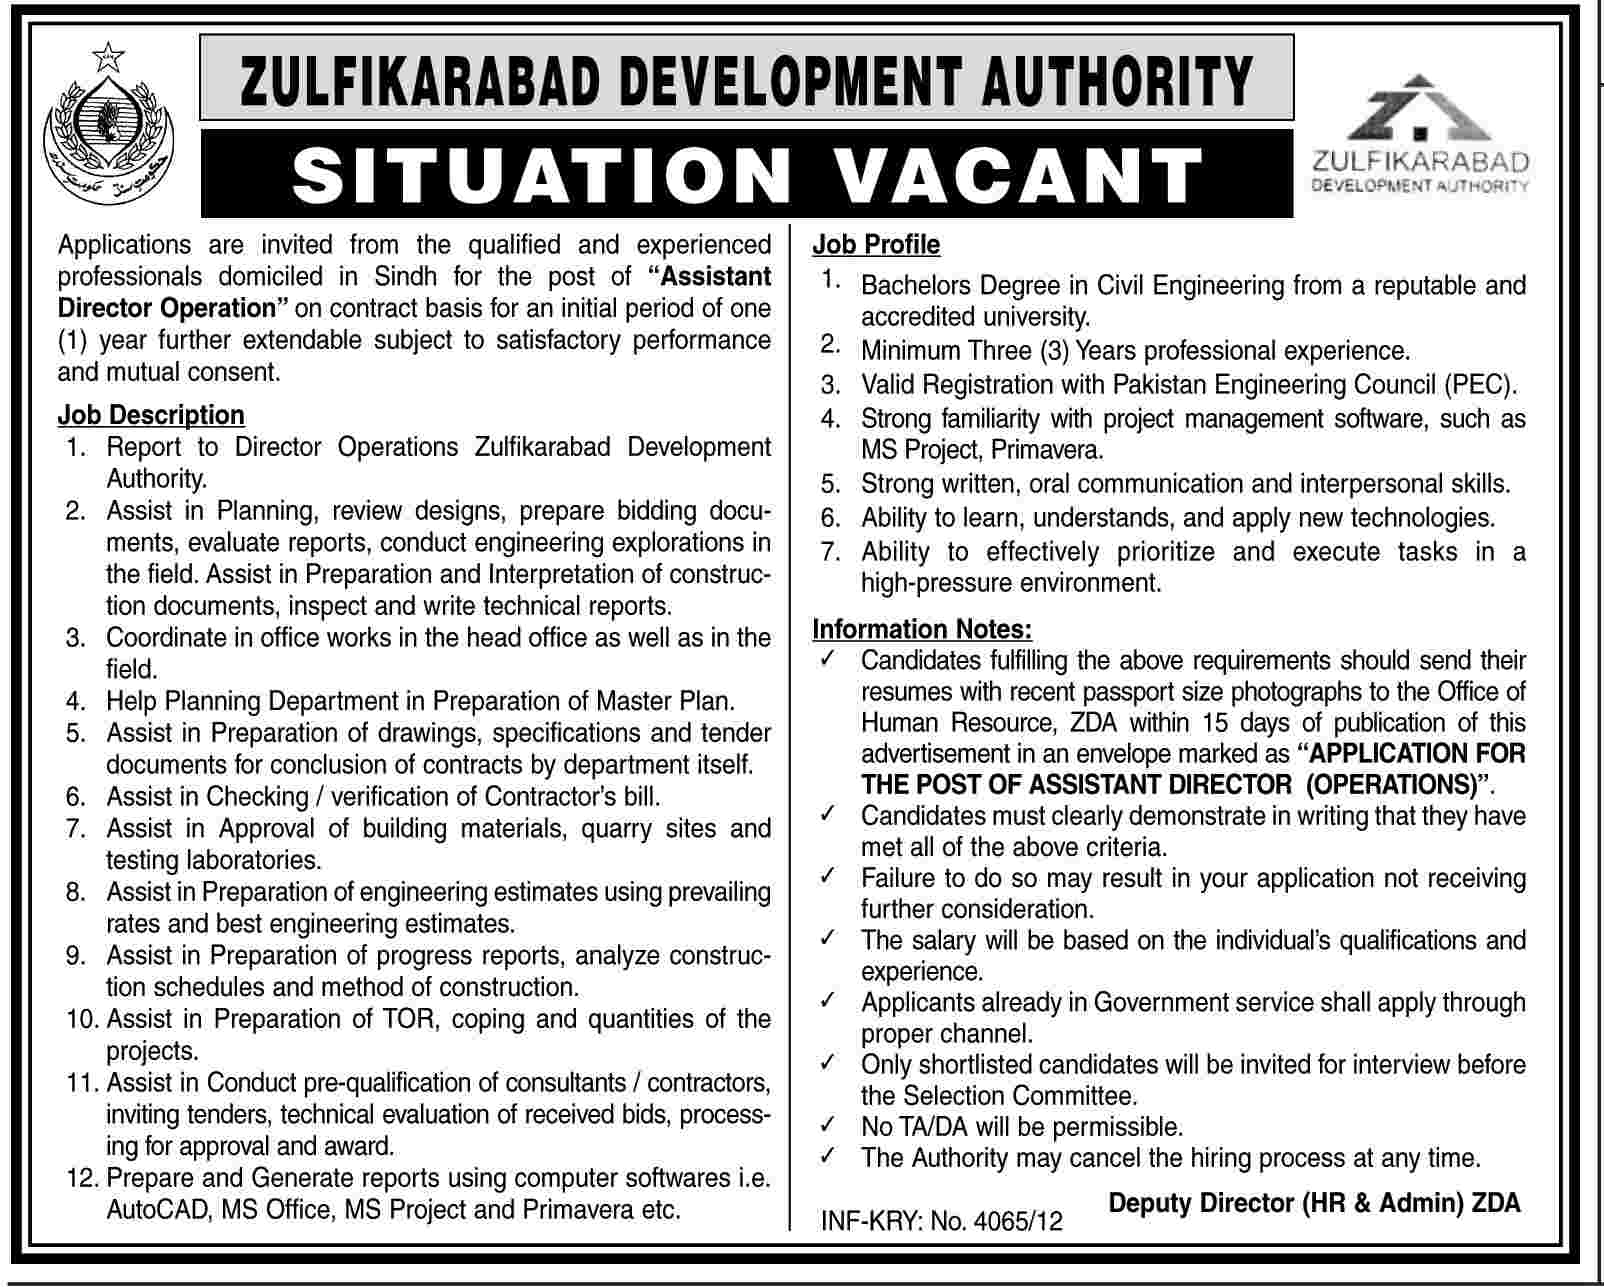 Zulfikarabad Development Authority (ZDA) Requires Assistant Director Operation